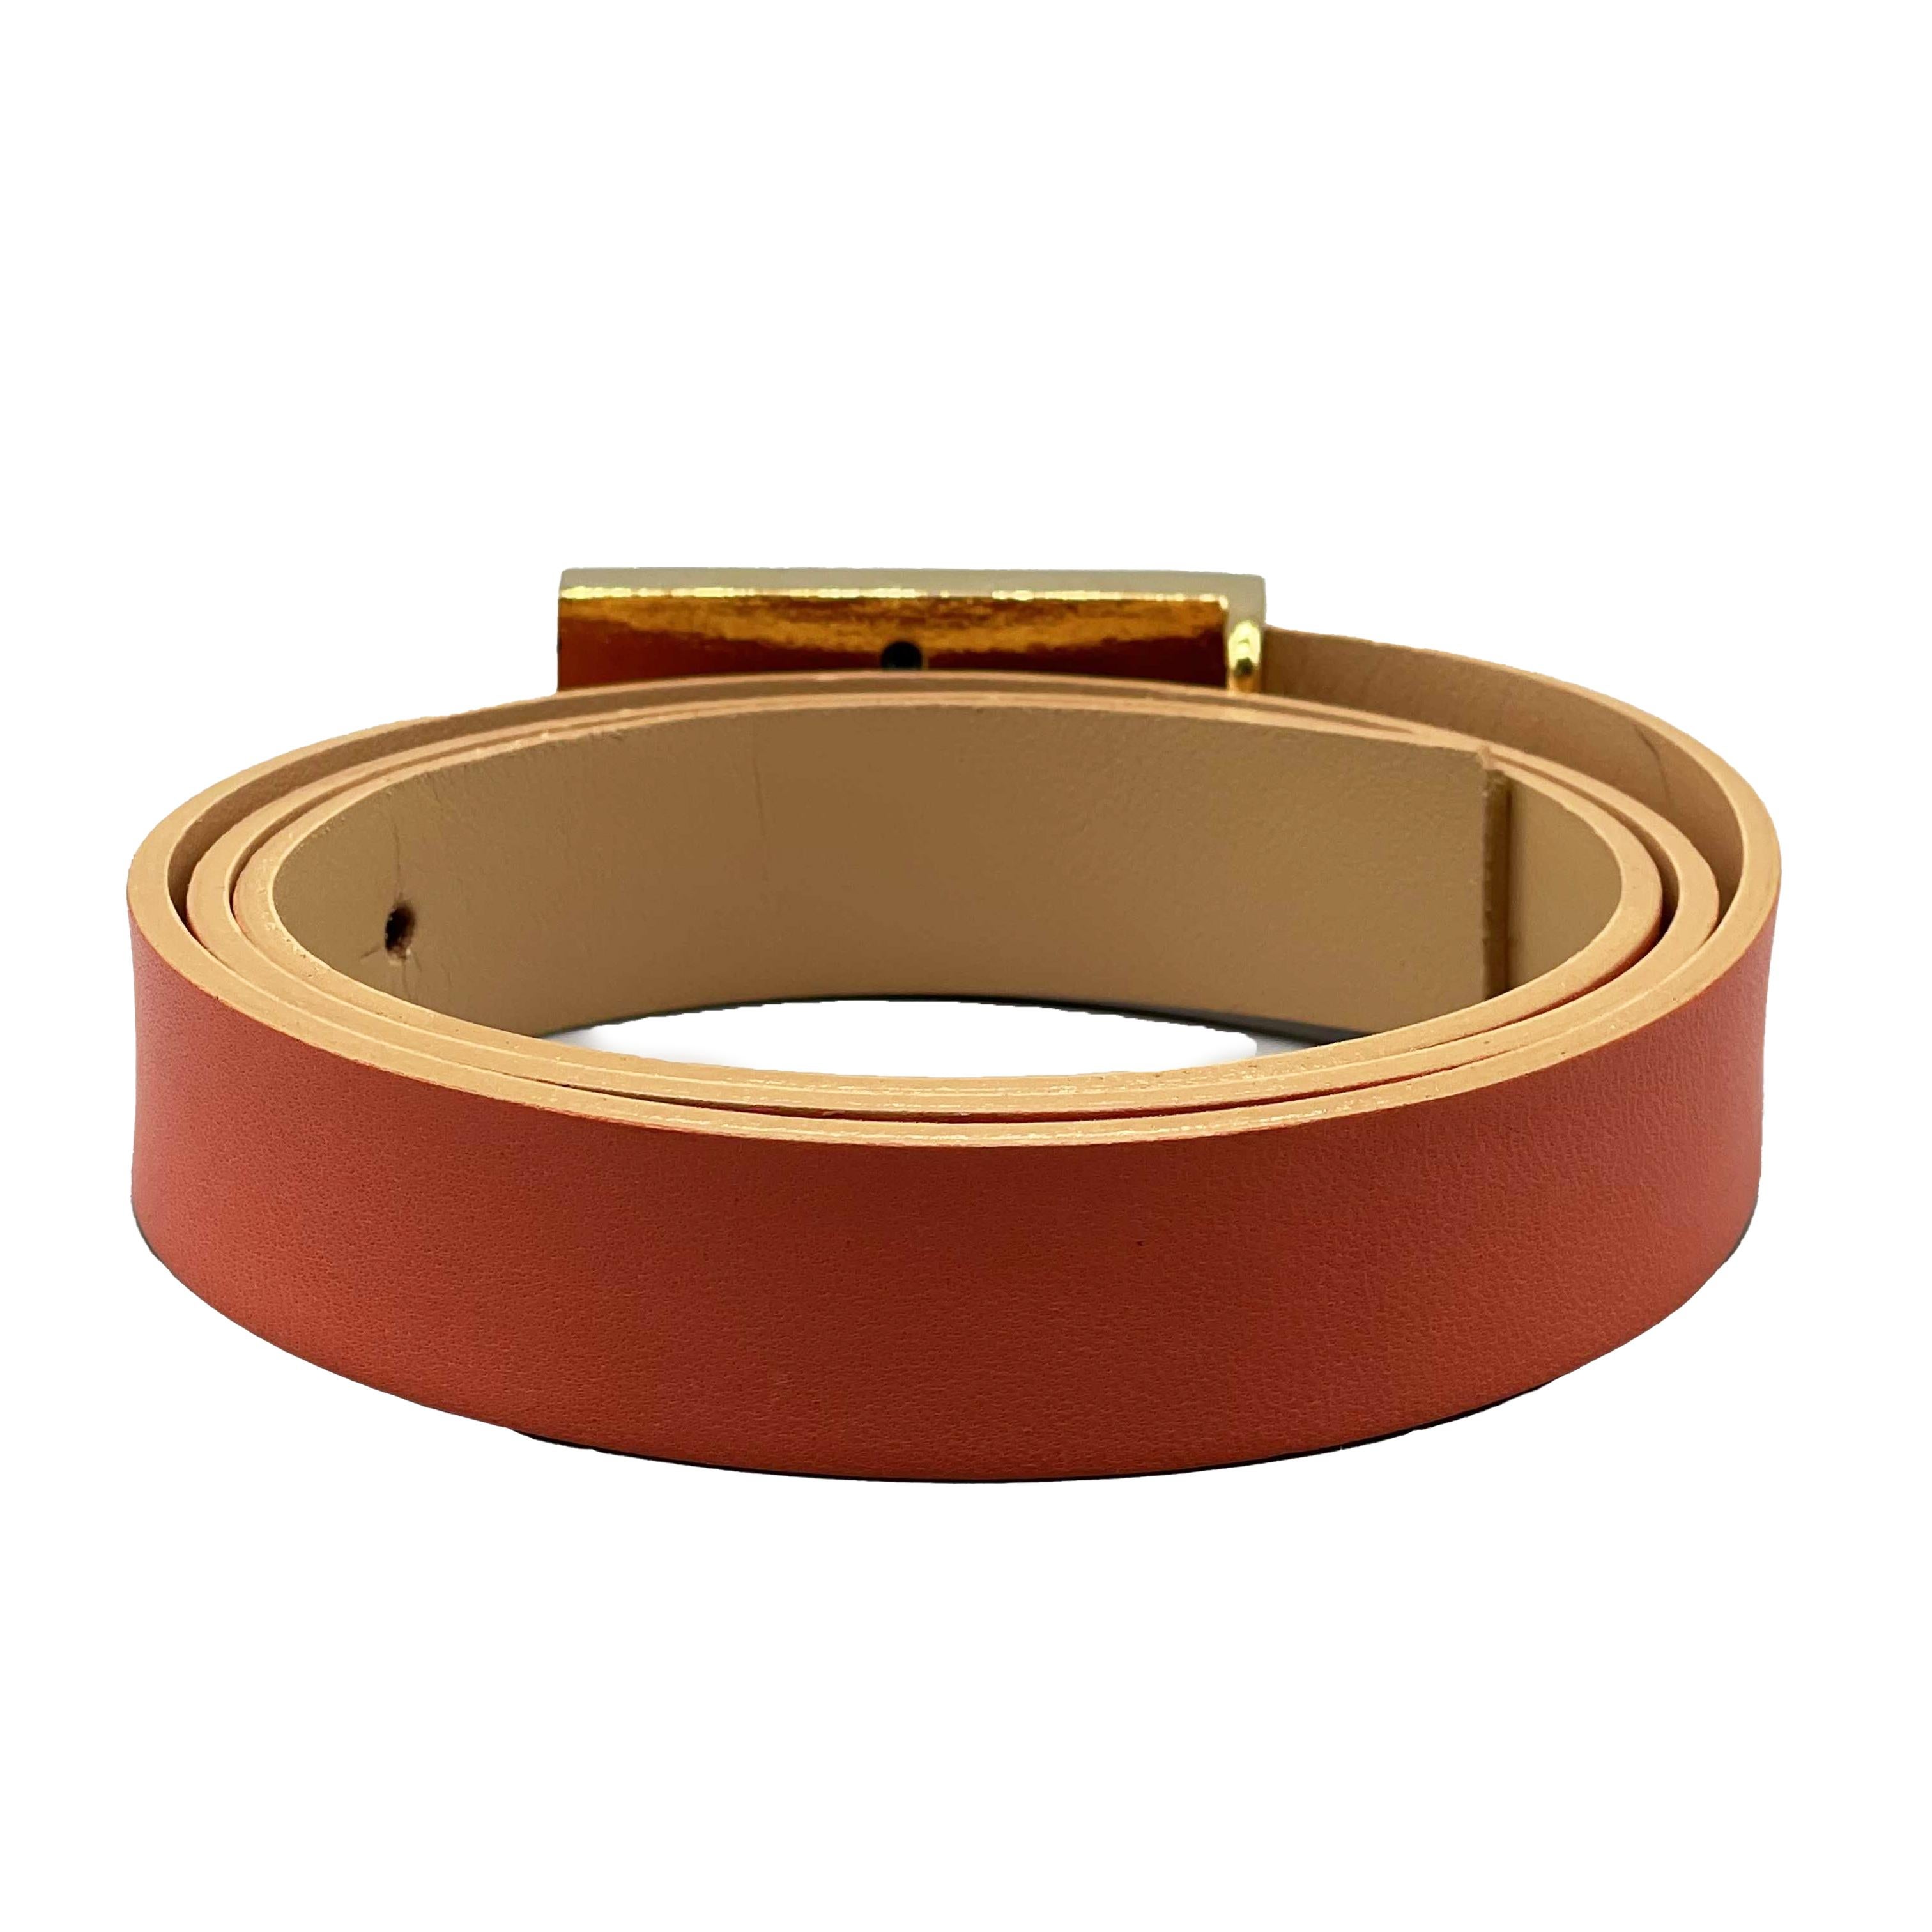 CHANEL - 01P 2001 Spring Vintage Leather Belt -Salmon / Gold 80 / 32

Description

De la collection printemps 2001.
Cette ceinture est fabriquée dans un cuir de couleur saumon.
